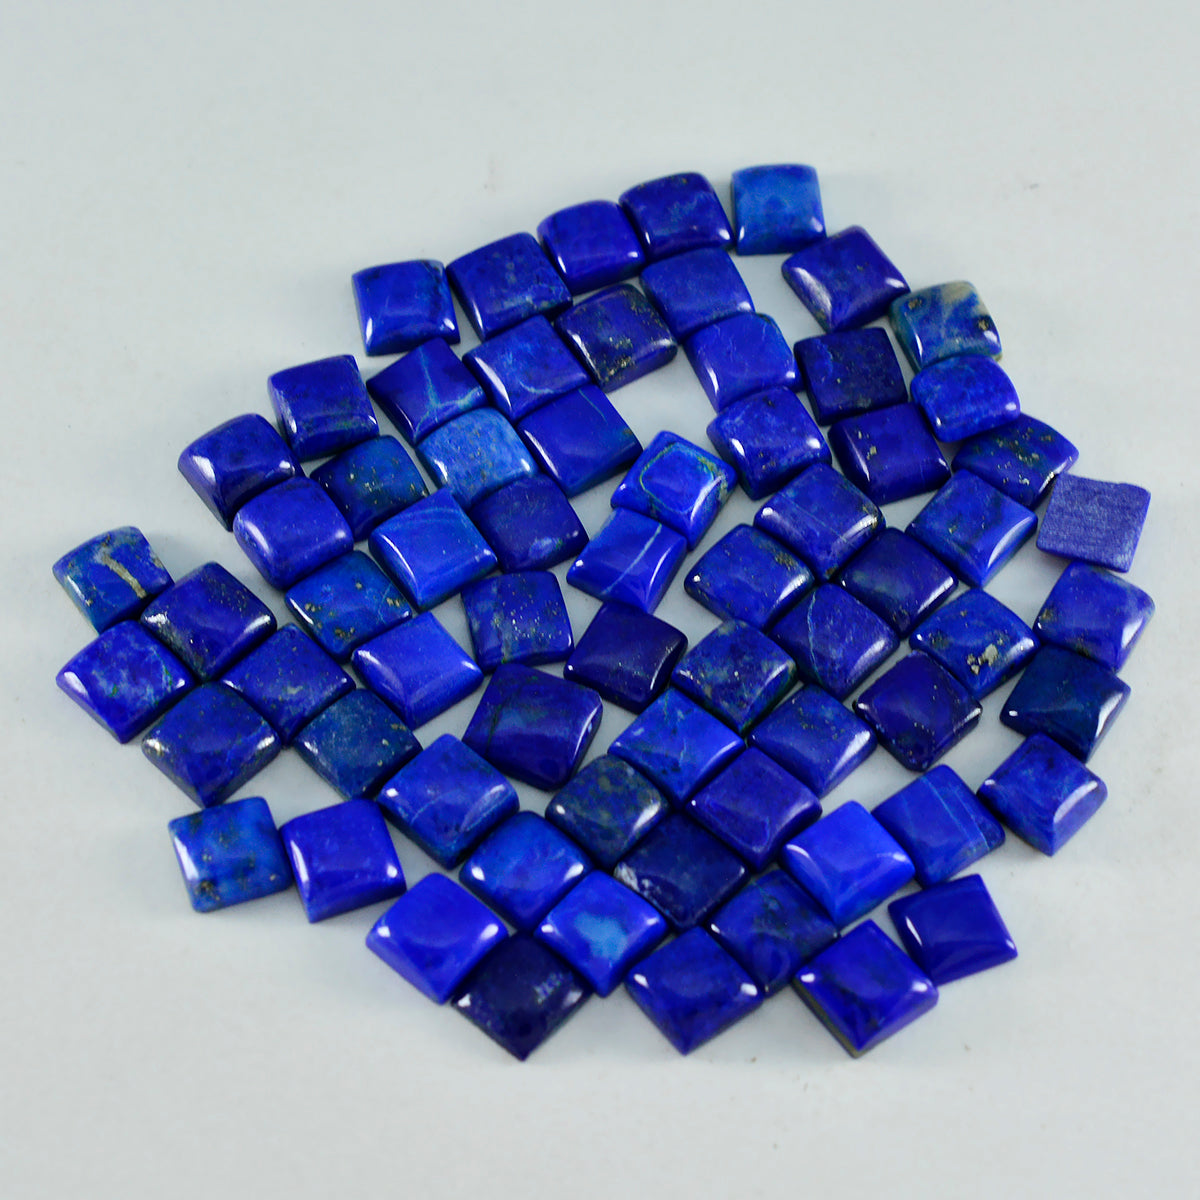 Riyogems 1PC blauwe lapis lazuli cabochon 7x7 mm vierkante vorm schoonheid kwaliteit steen